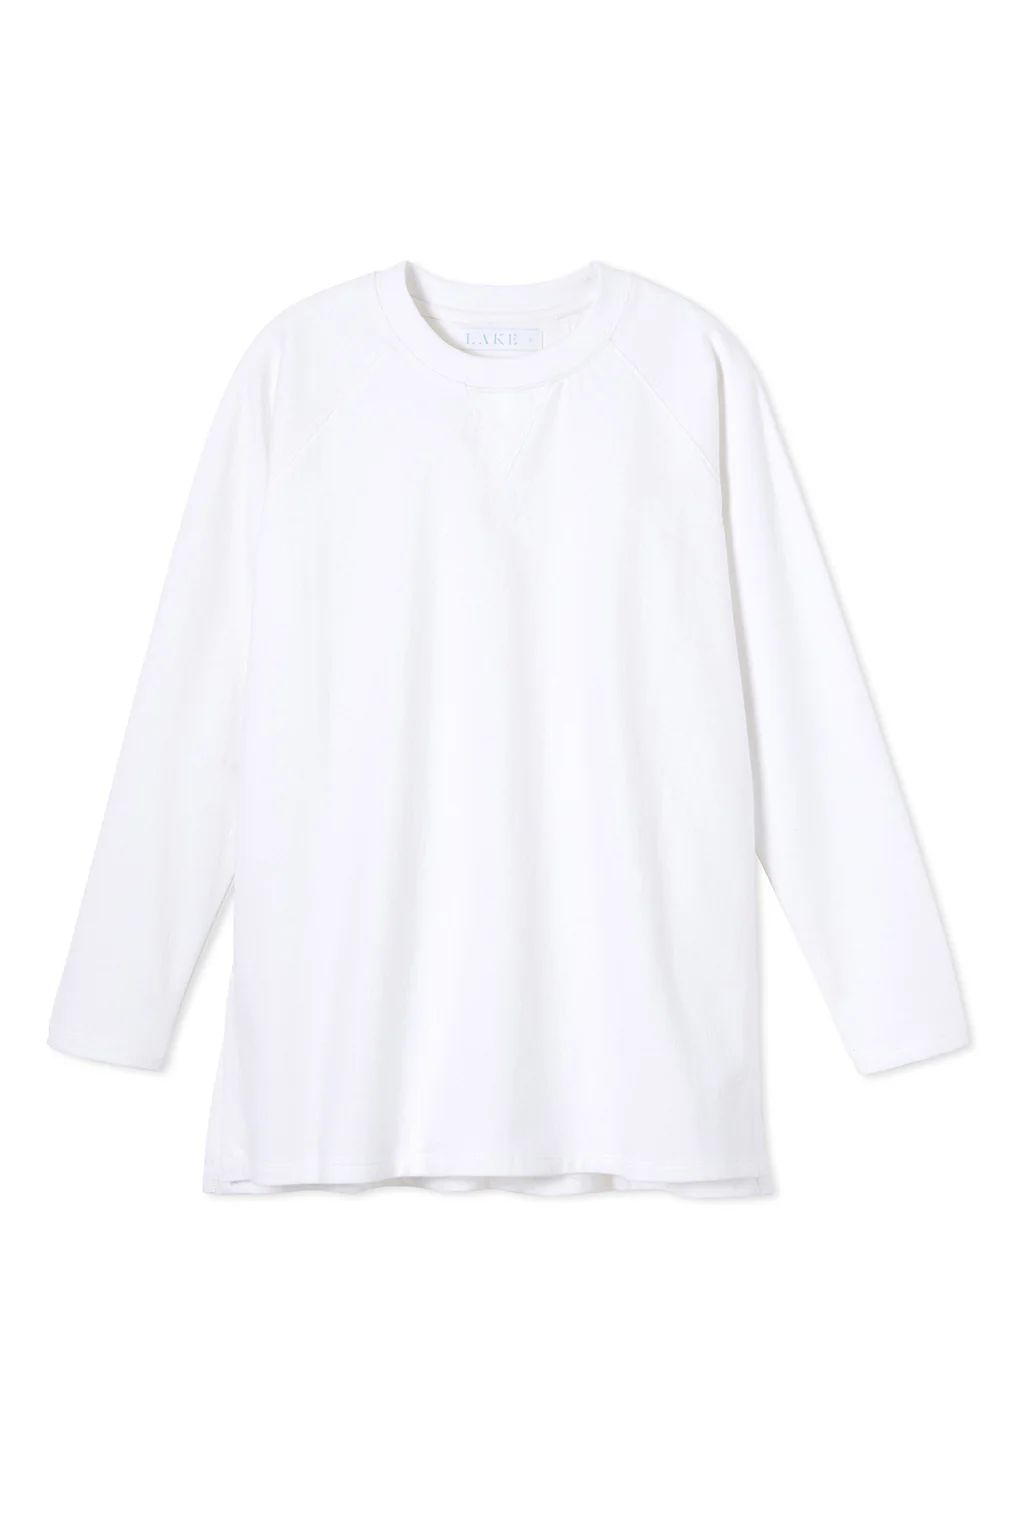 Sweatshirt Tunic in White | Lake Pajamas